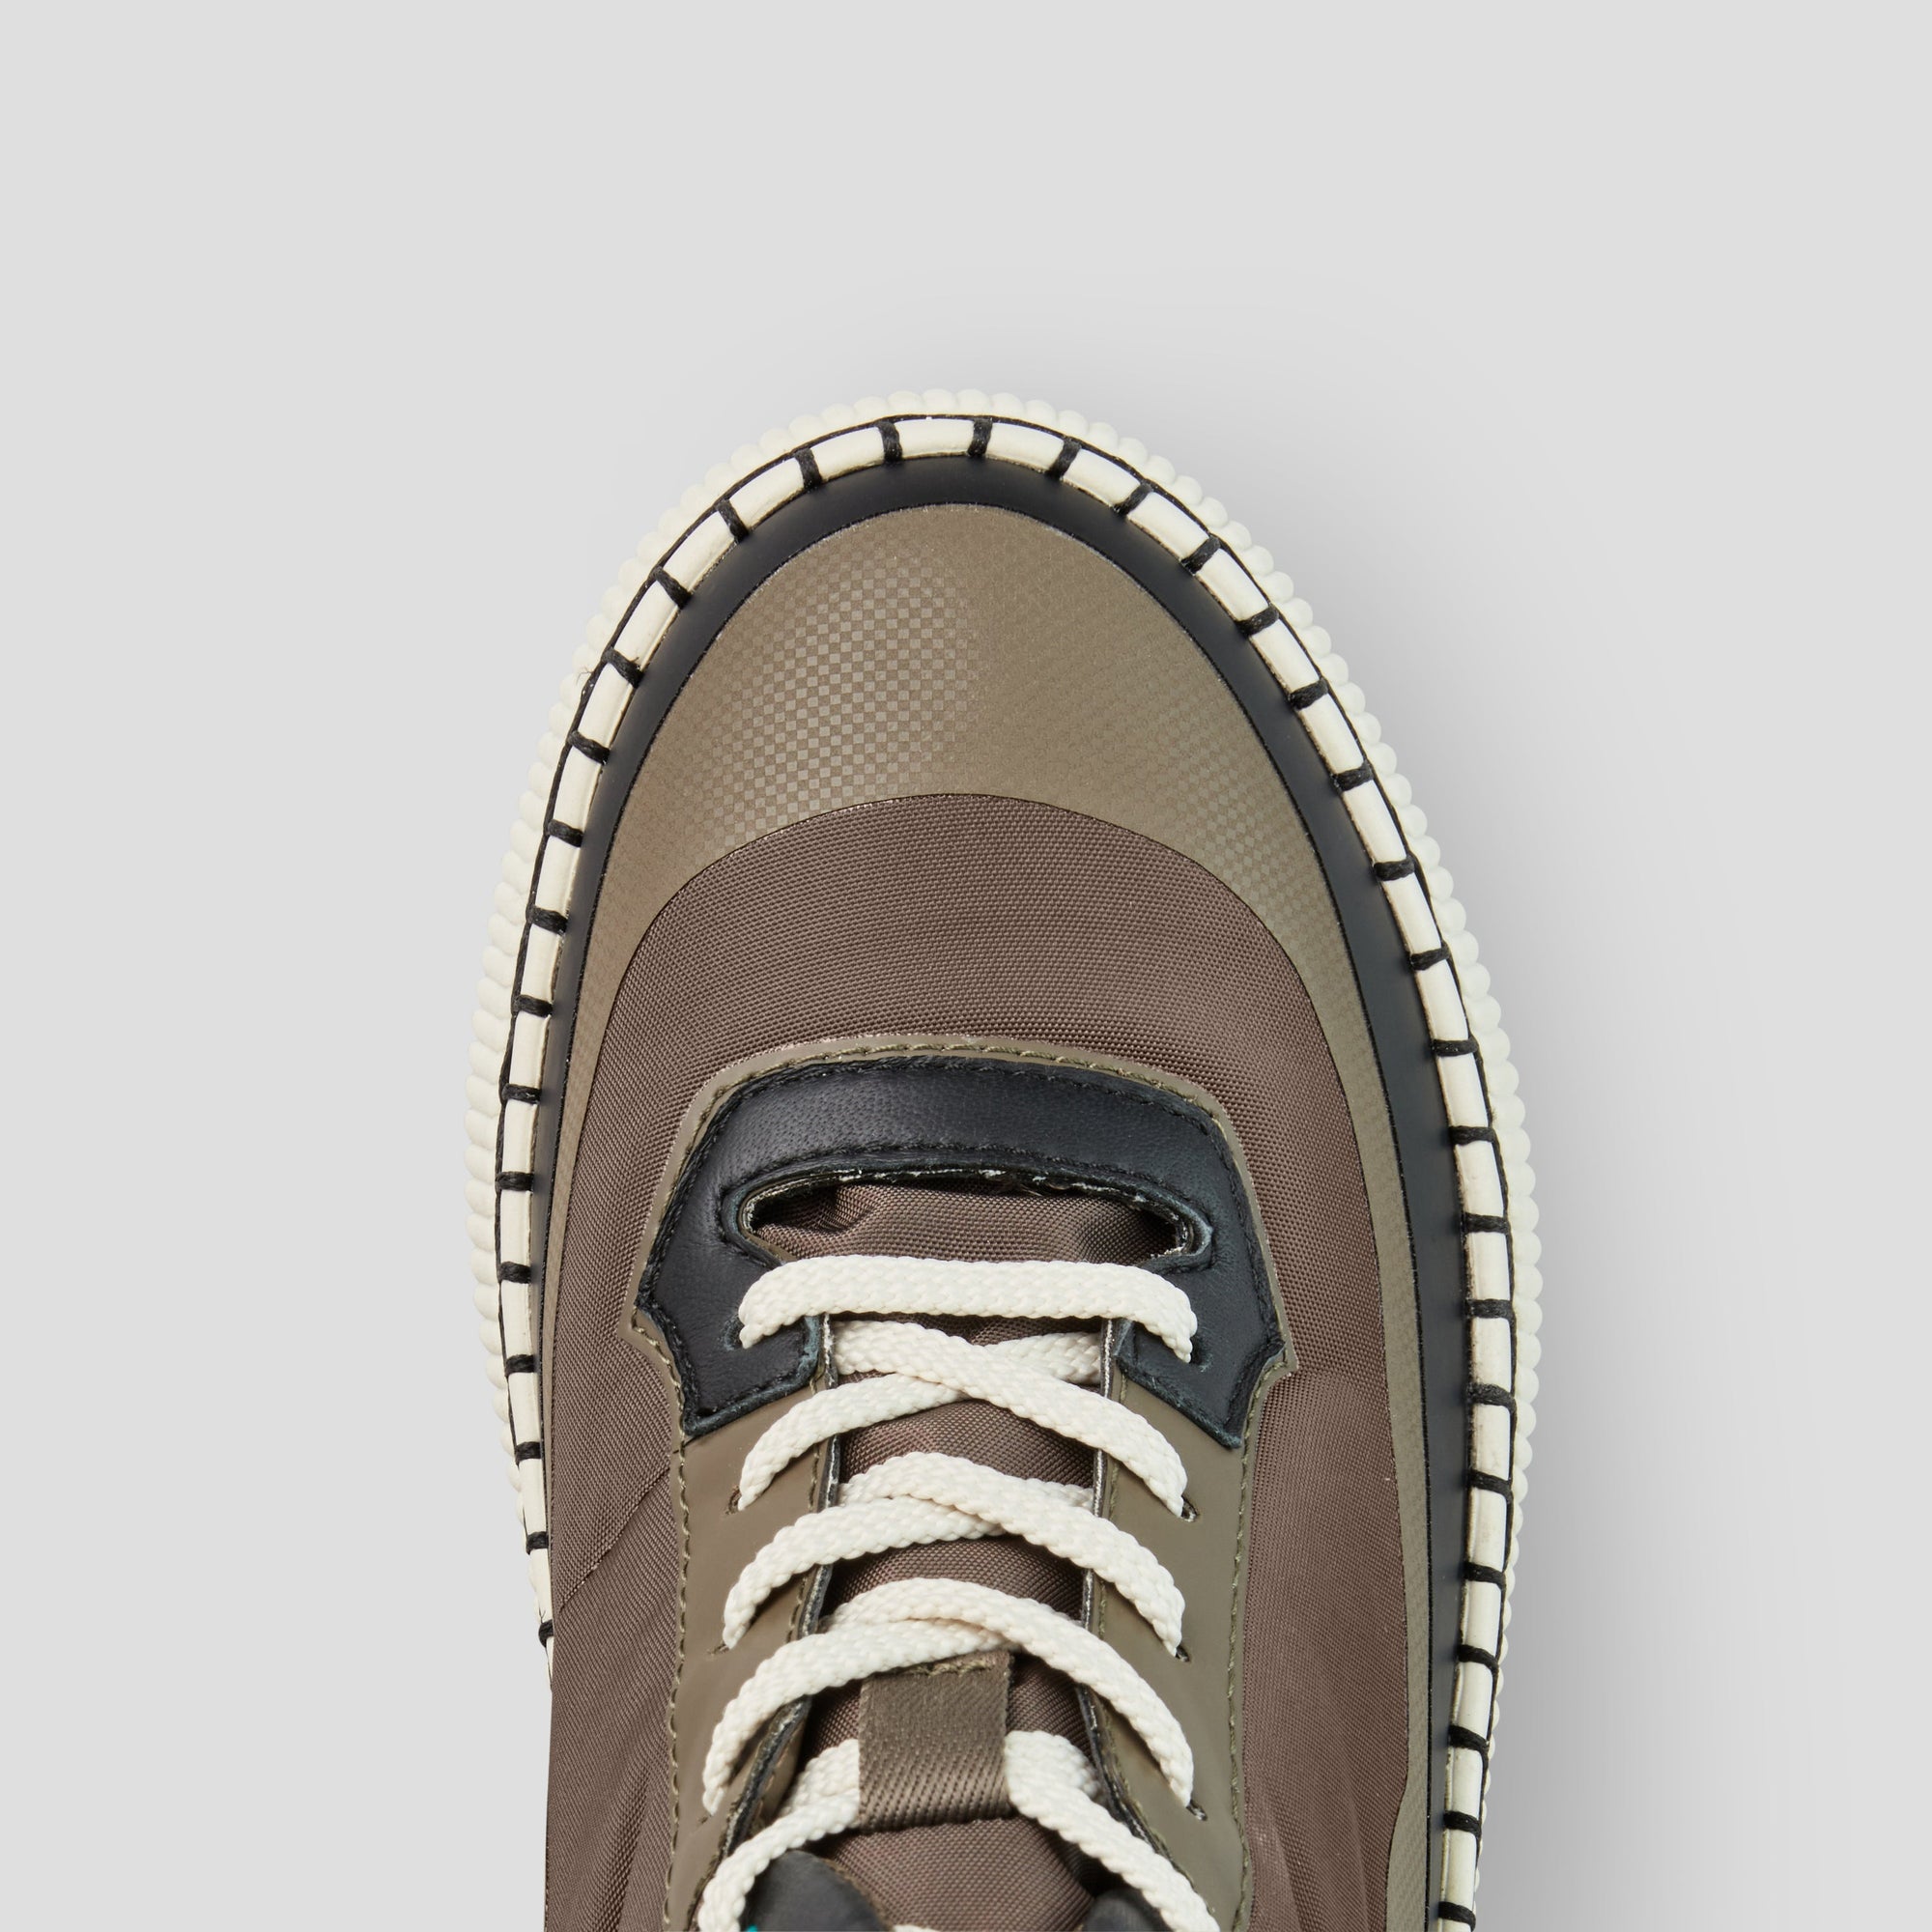 Savant - Sneaker Luxmotion imperméables en nylon et cuir - Colour Loden